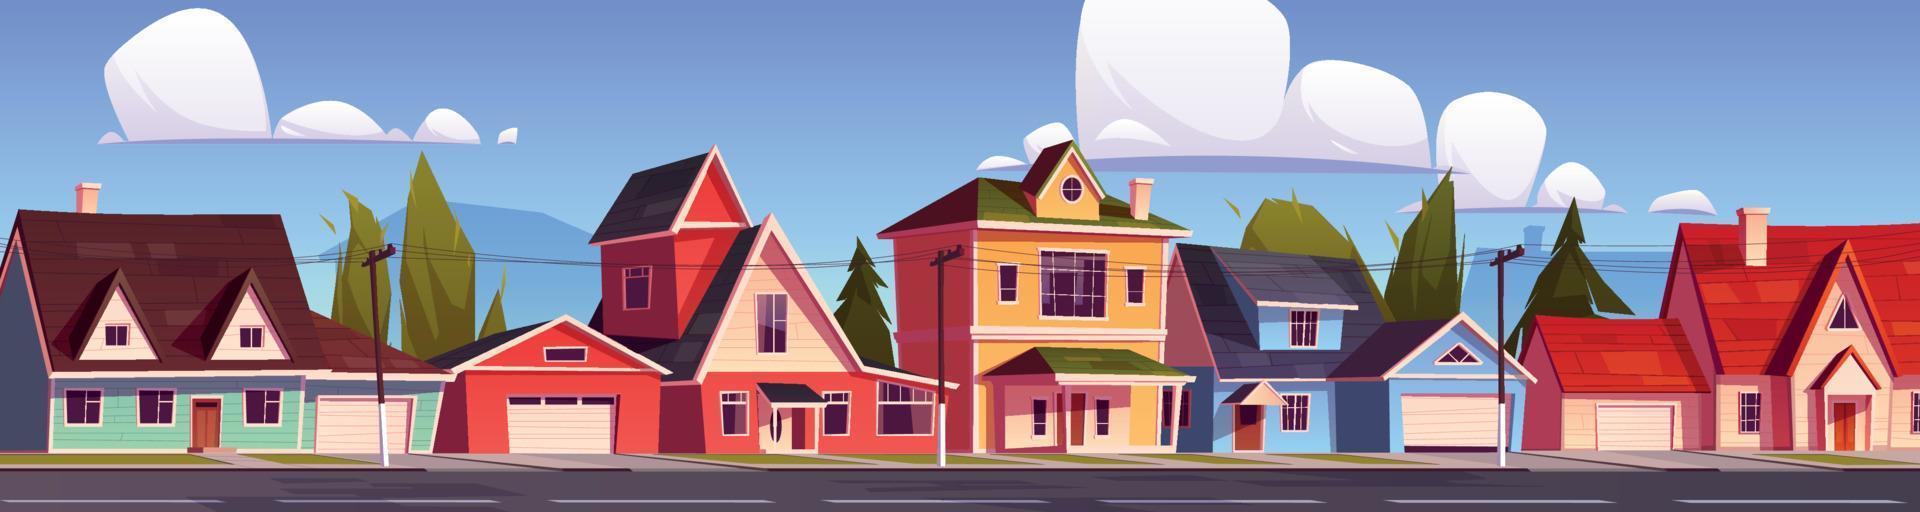 voorstad huizen, buitenwijk straat met huisjes. vector